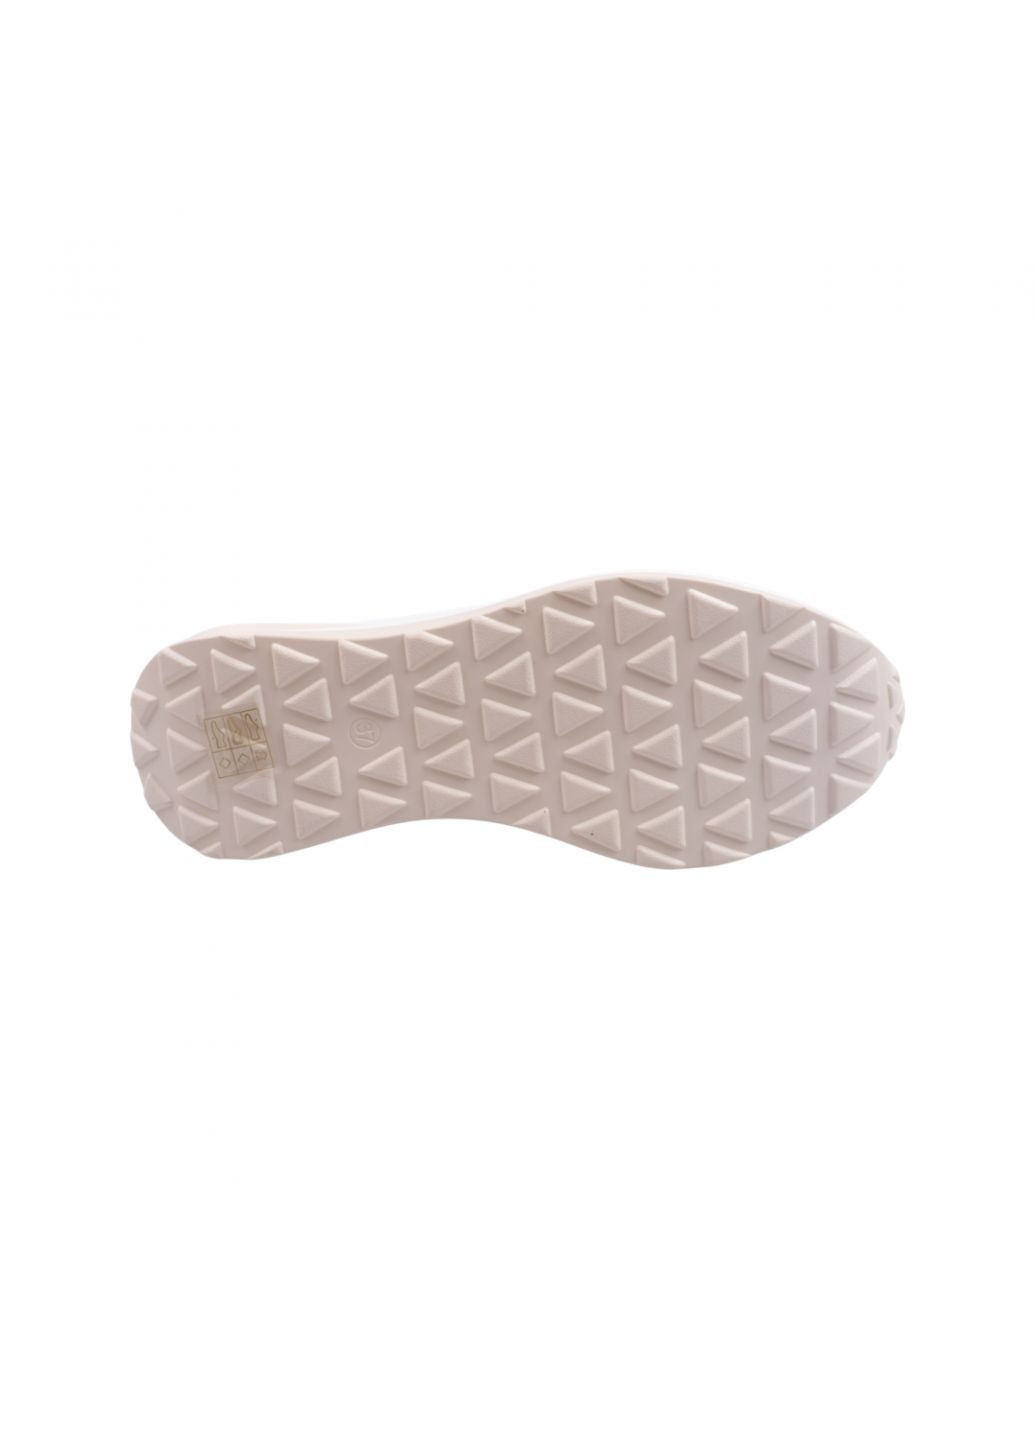 Білі кросівки жіночі молочні натуральна шкіра Lifexpert 1165-23LTSP